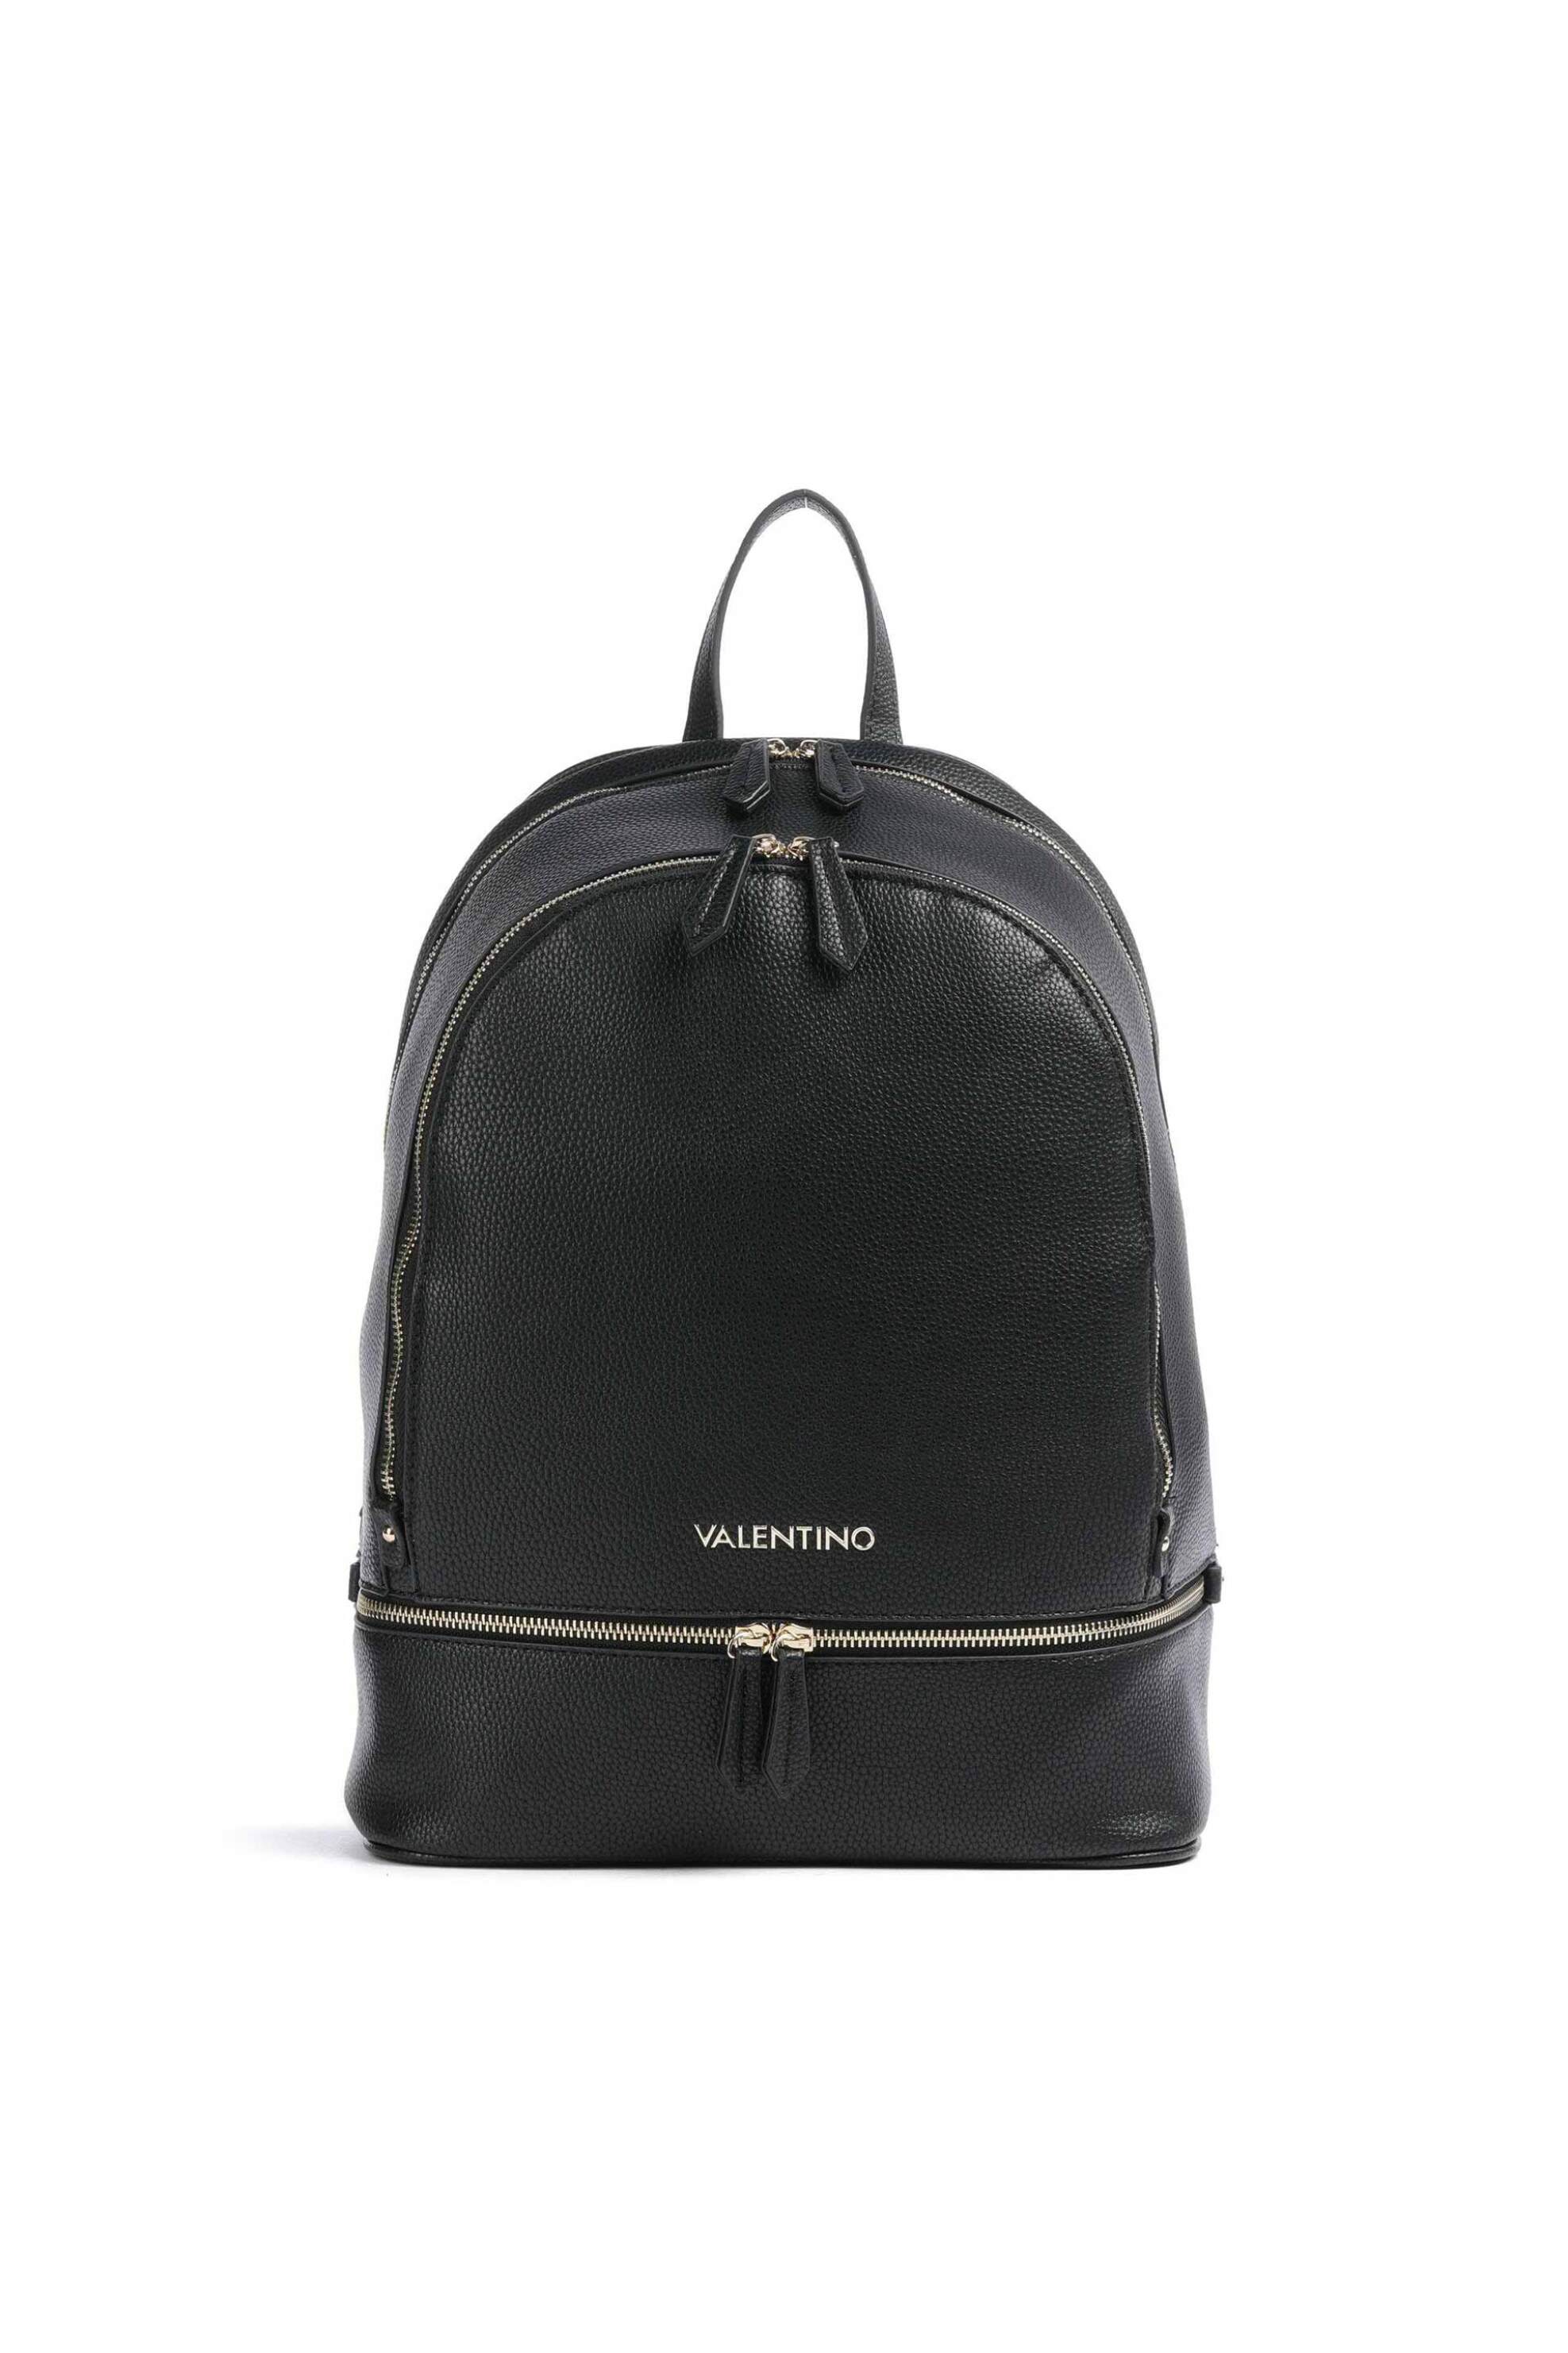 Γυναίκα > ΤΣΑΝΤΕΣ > Σακίδια & Backpacks Valentino γυναικείο backpack μονόχρωμο με πολλαπλές θήκες "Brixton" - 55KVBS7LX02/BRI Μαύρο